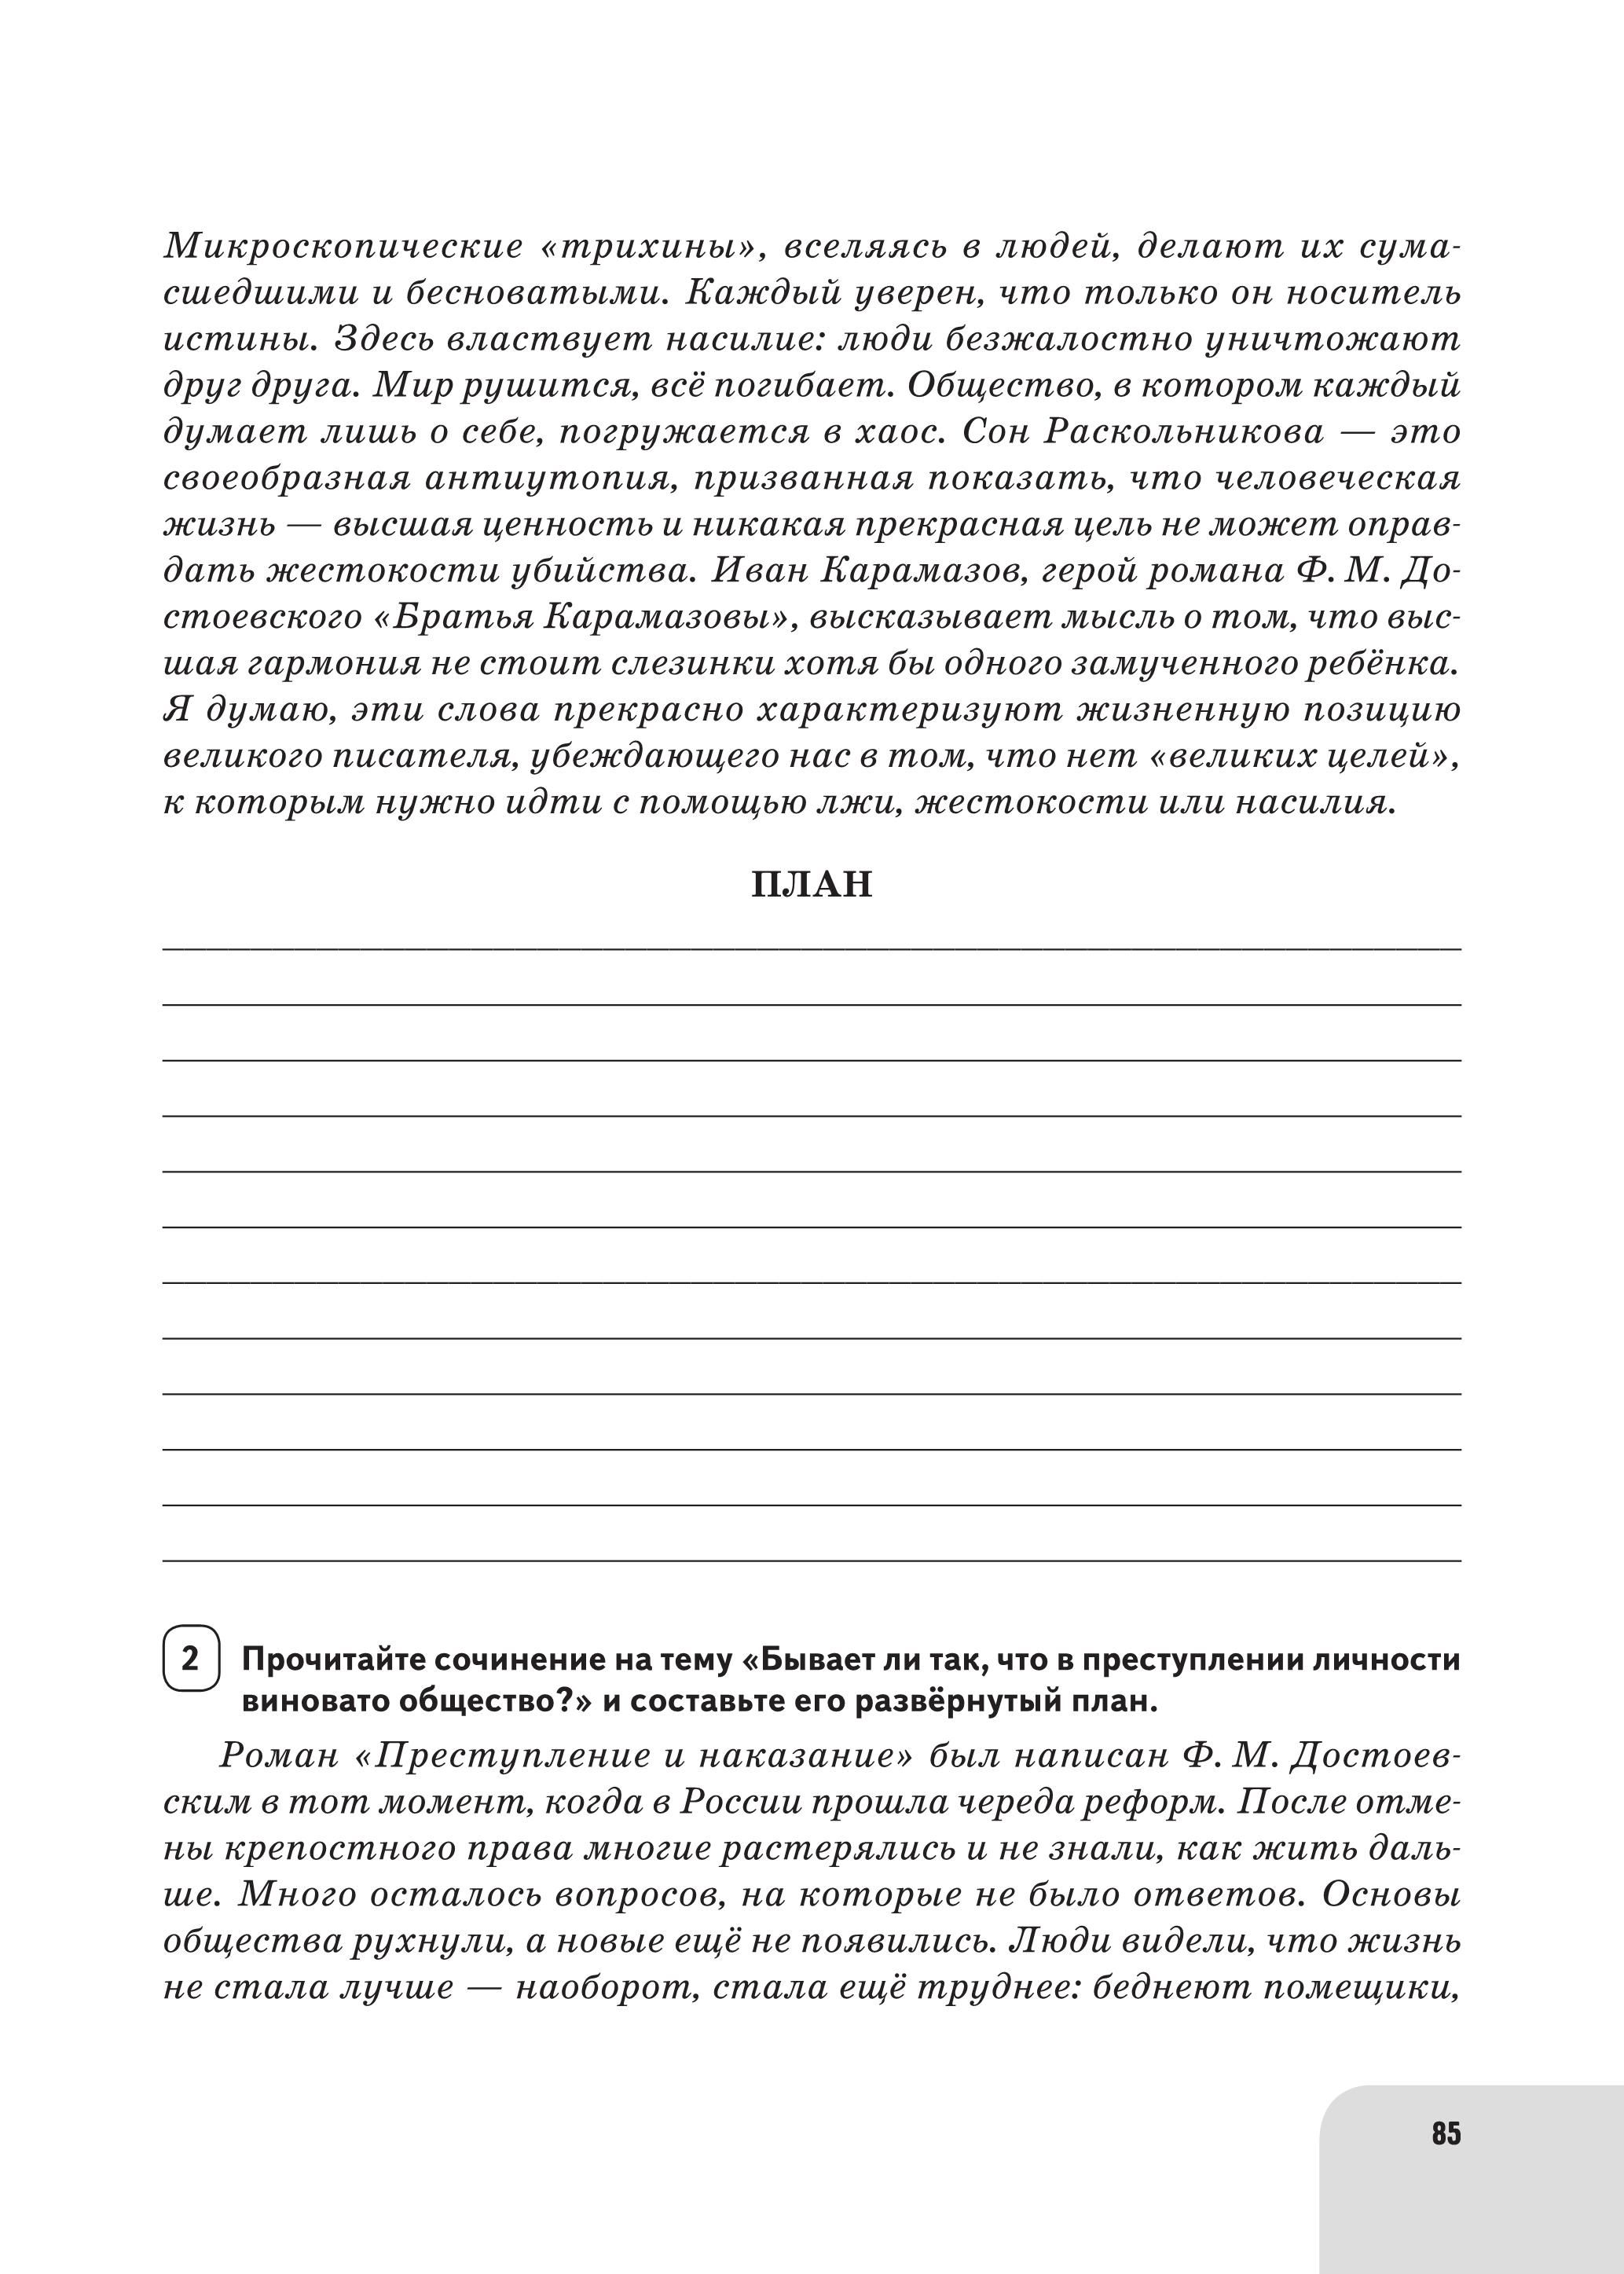 Русский язык. Литература. Итоговое выпускное сочинение в 11-м классе